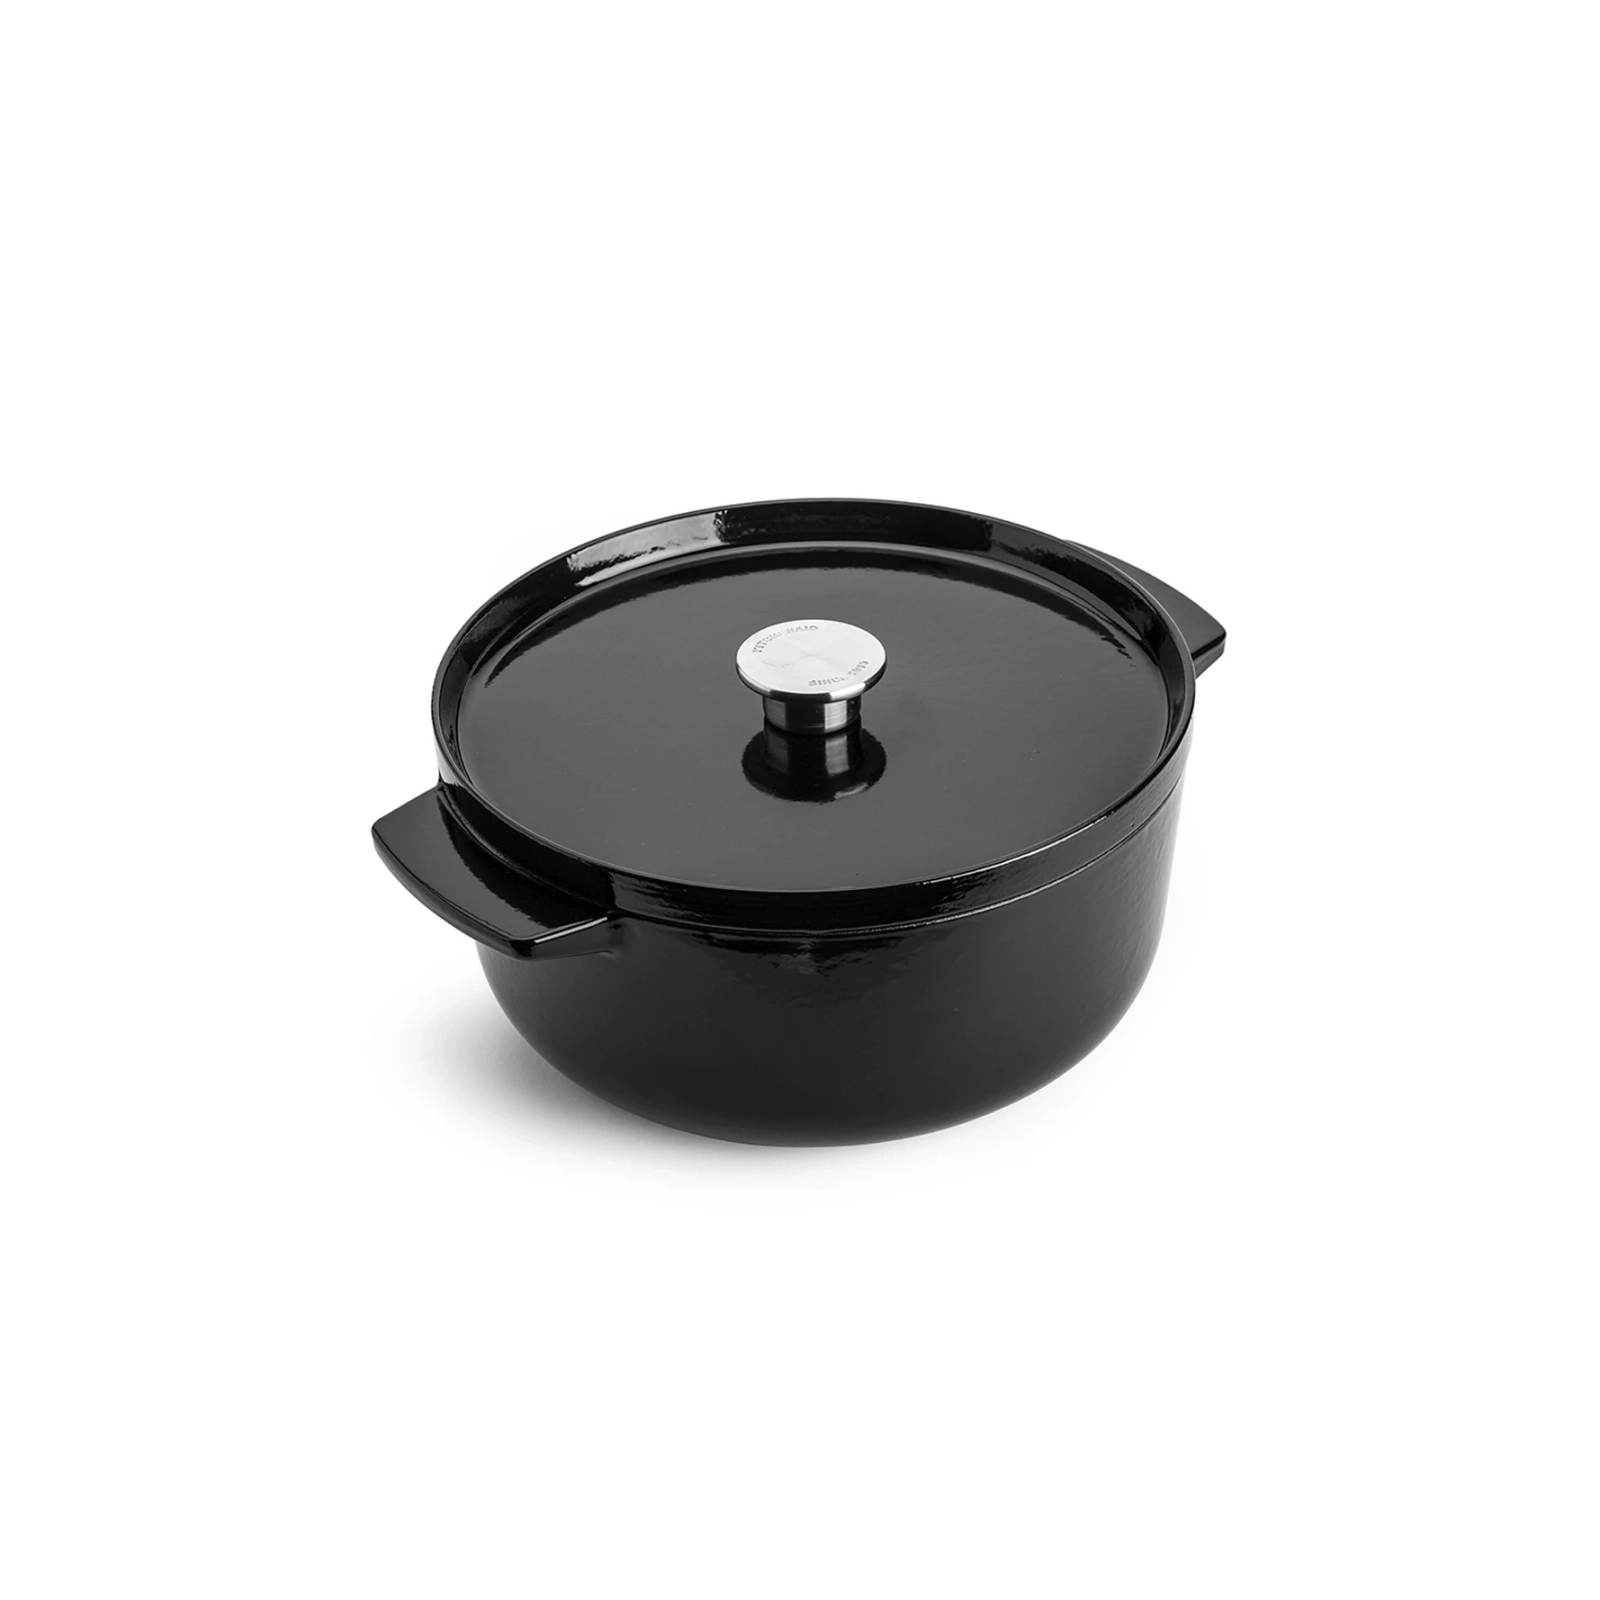 Каструля KitchenAid чавунна з кришкою 5,2 л Чорна (CC006061-001)